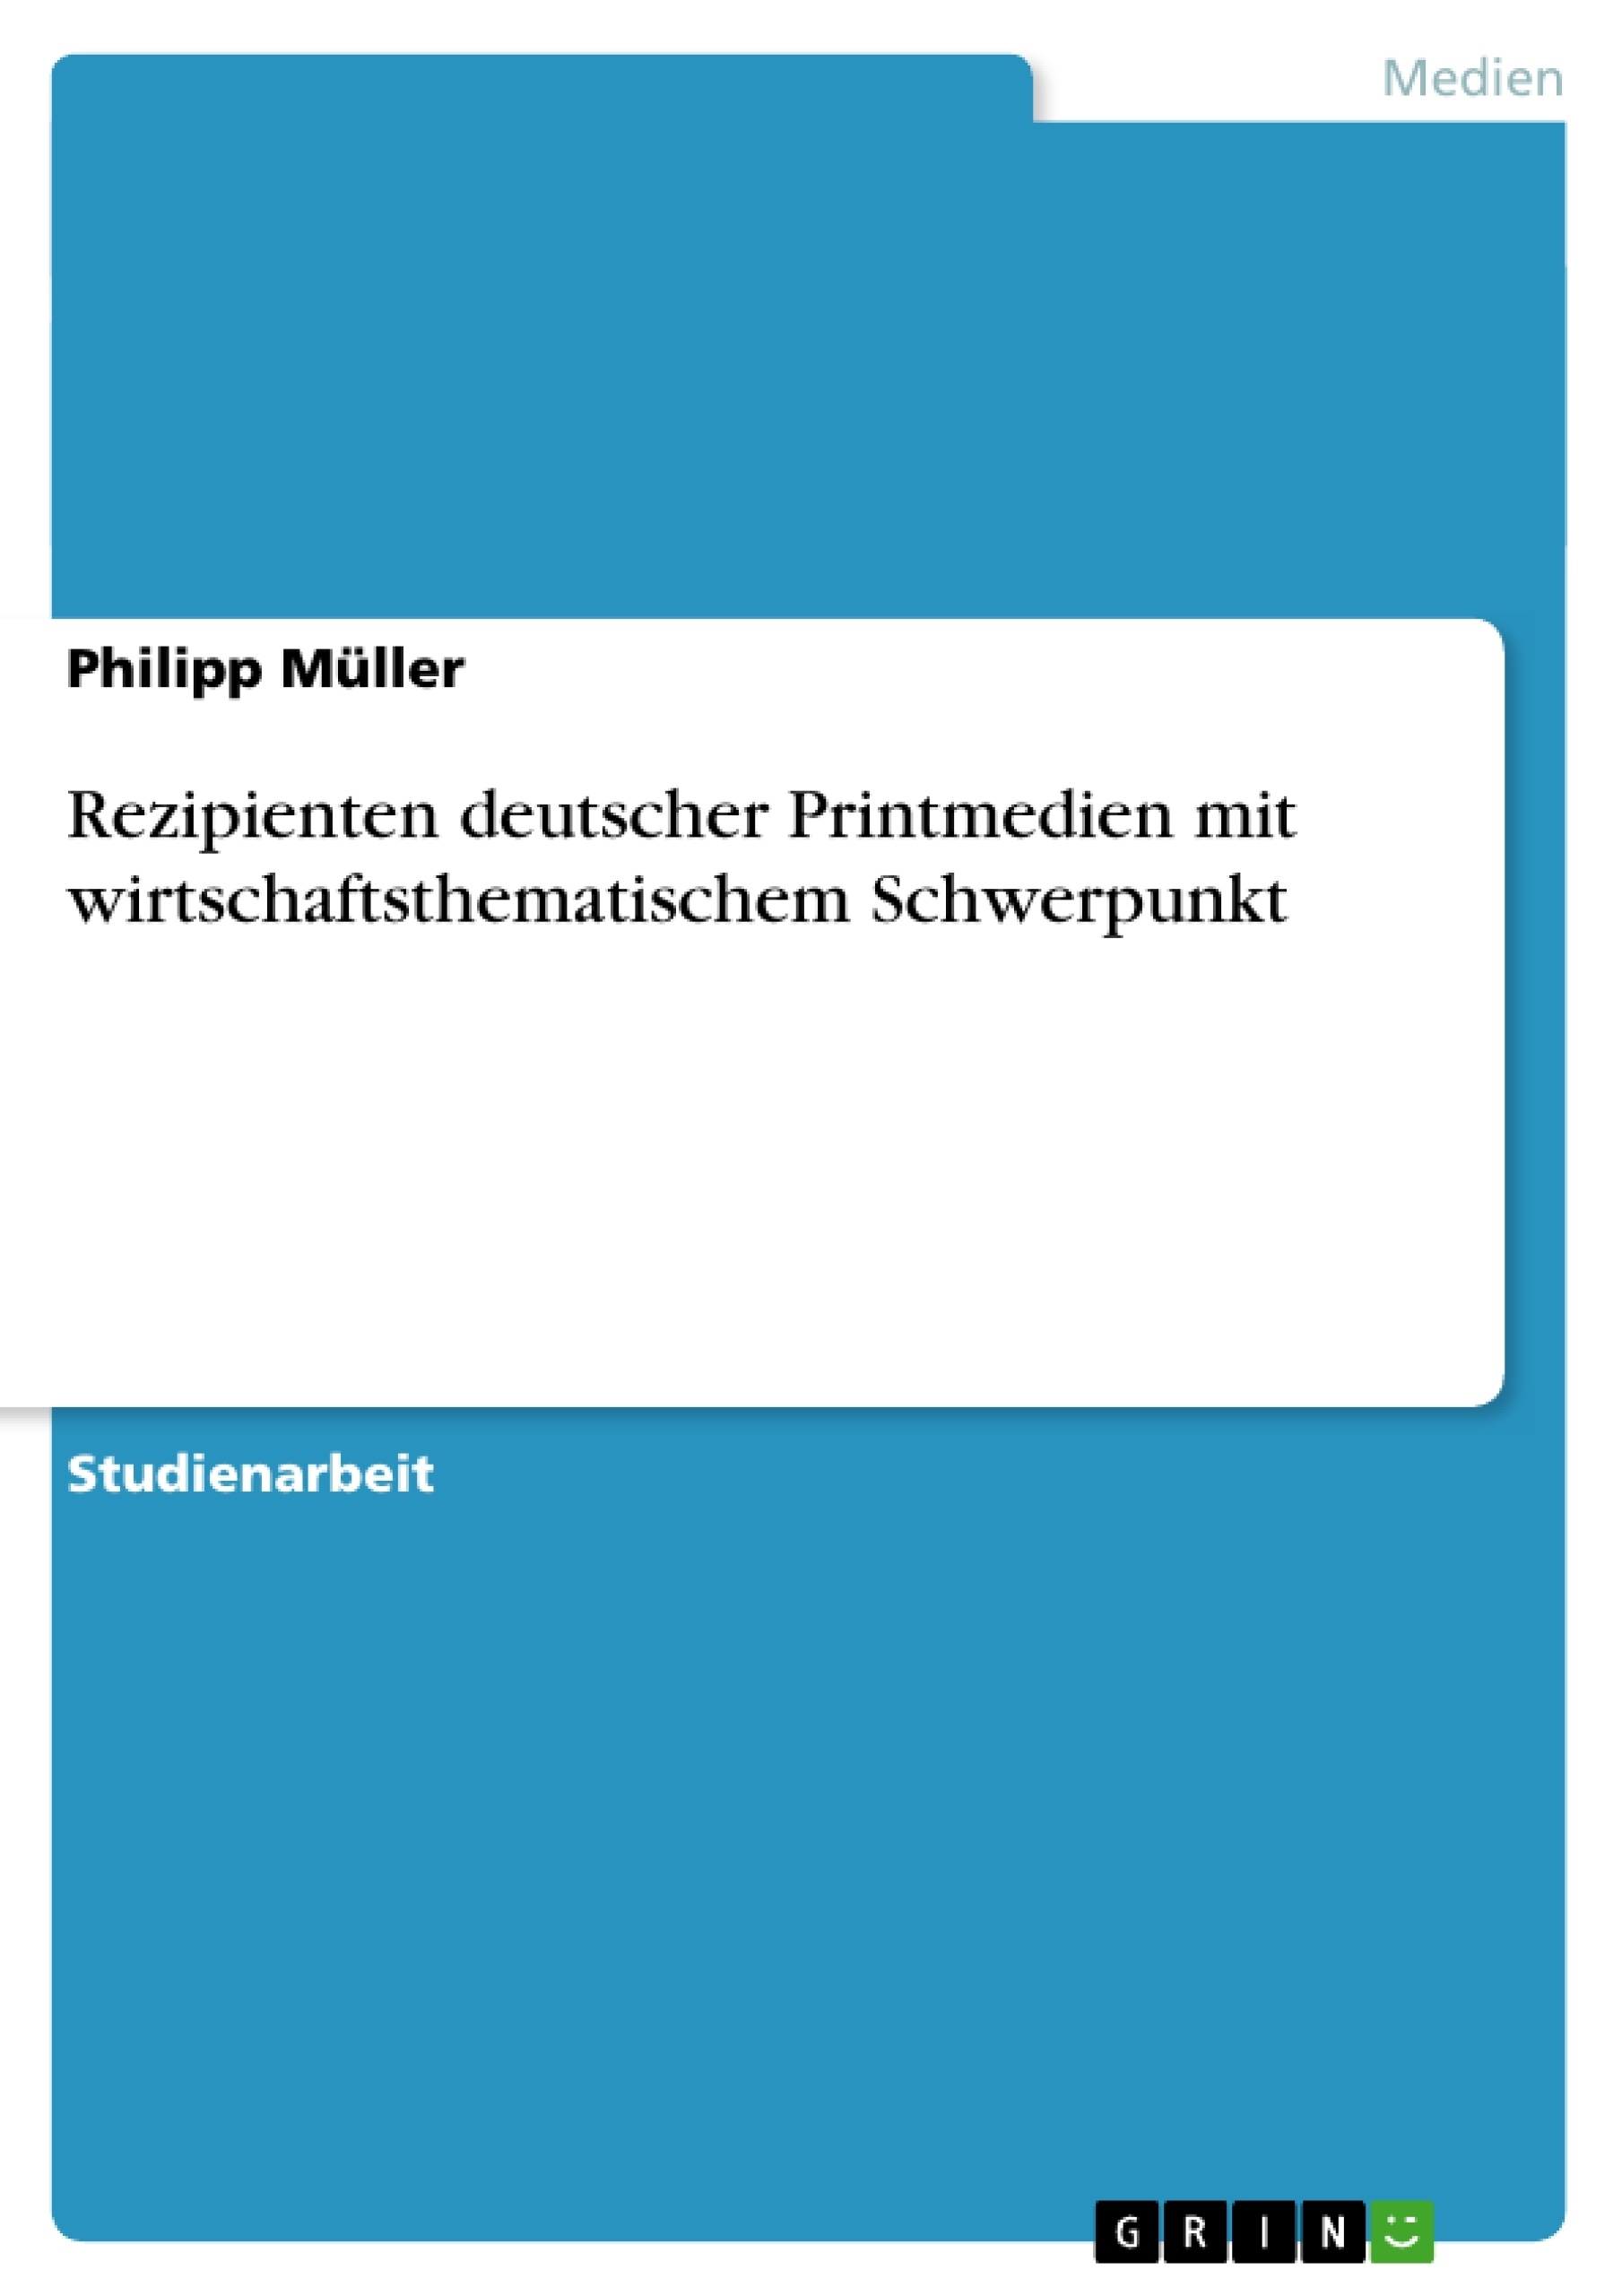 Titre: Rezipienten deutscher Printmedien mit wirtschaftsthematischem Schwerpunkt